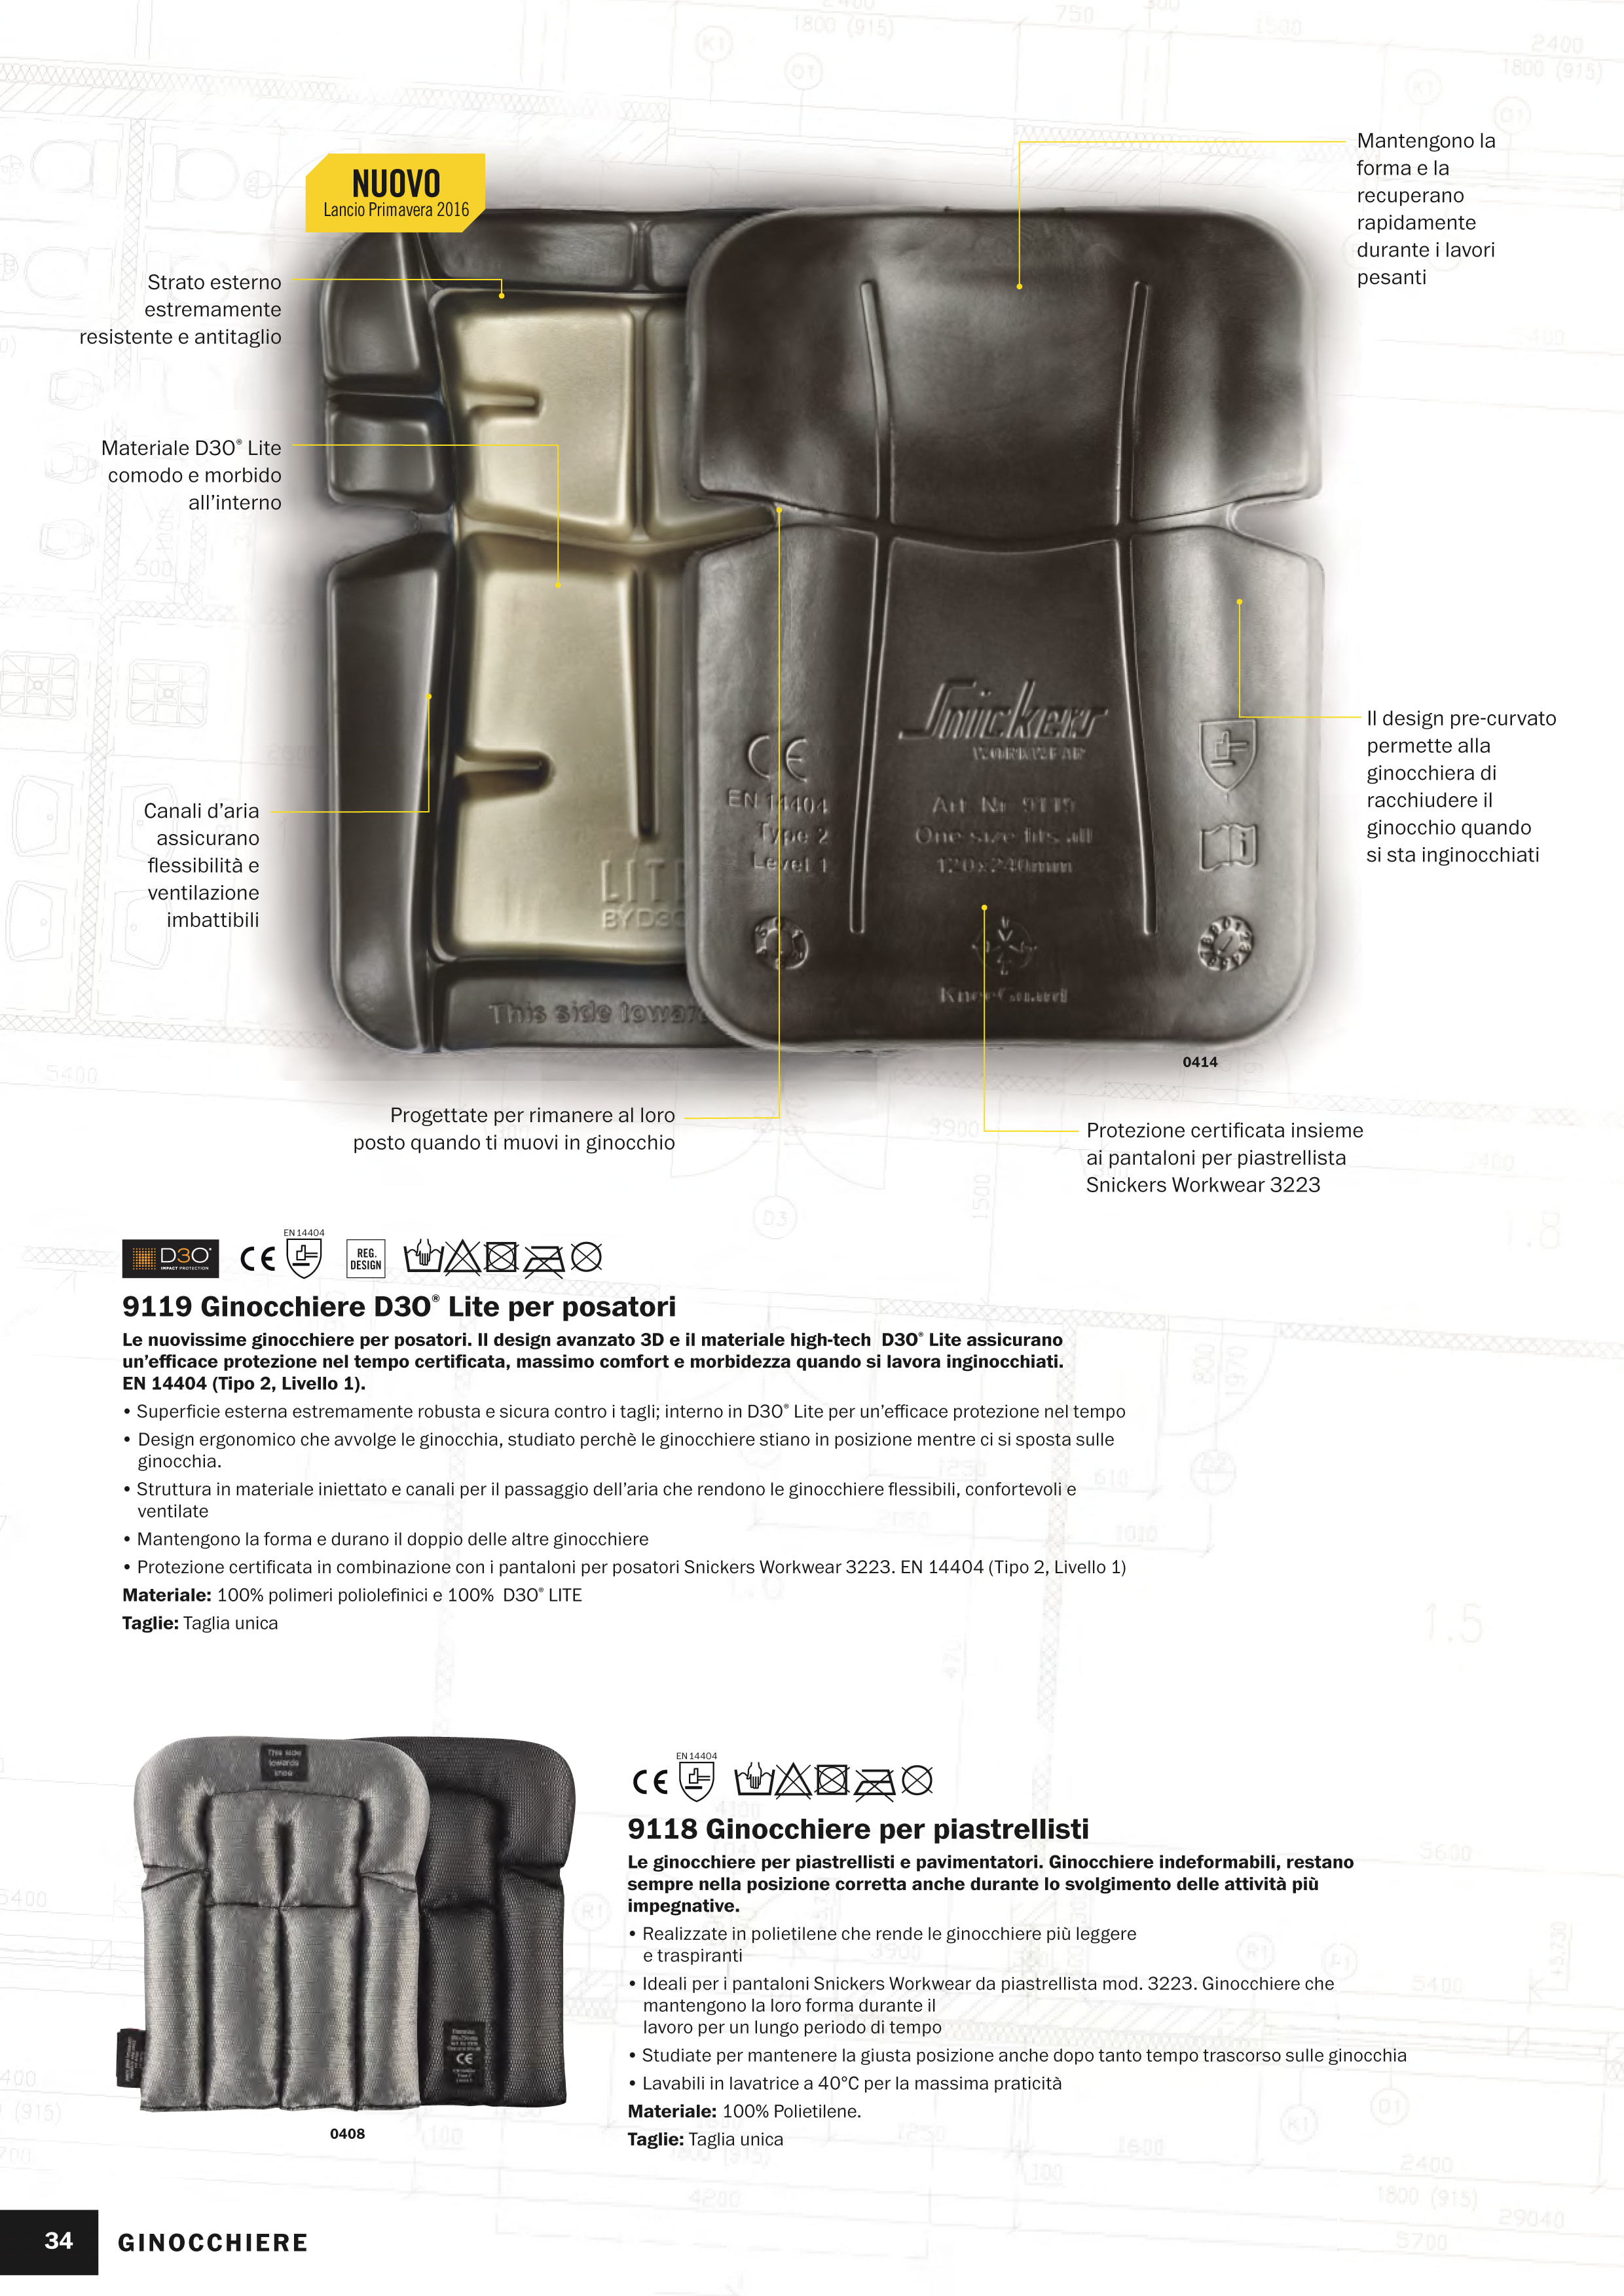 Ginocchiere per protezione lavoro Snickers 9110 (2pz) - Cod. 91100604000 -  ToolShop Italia